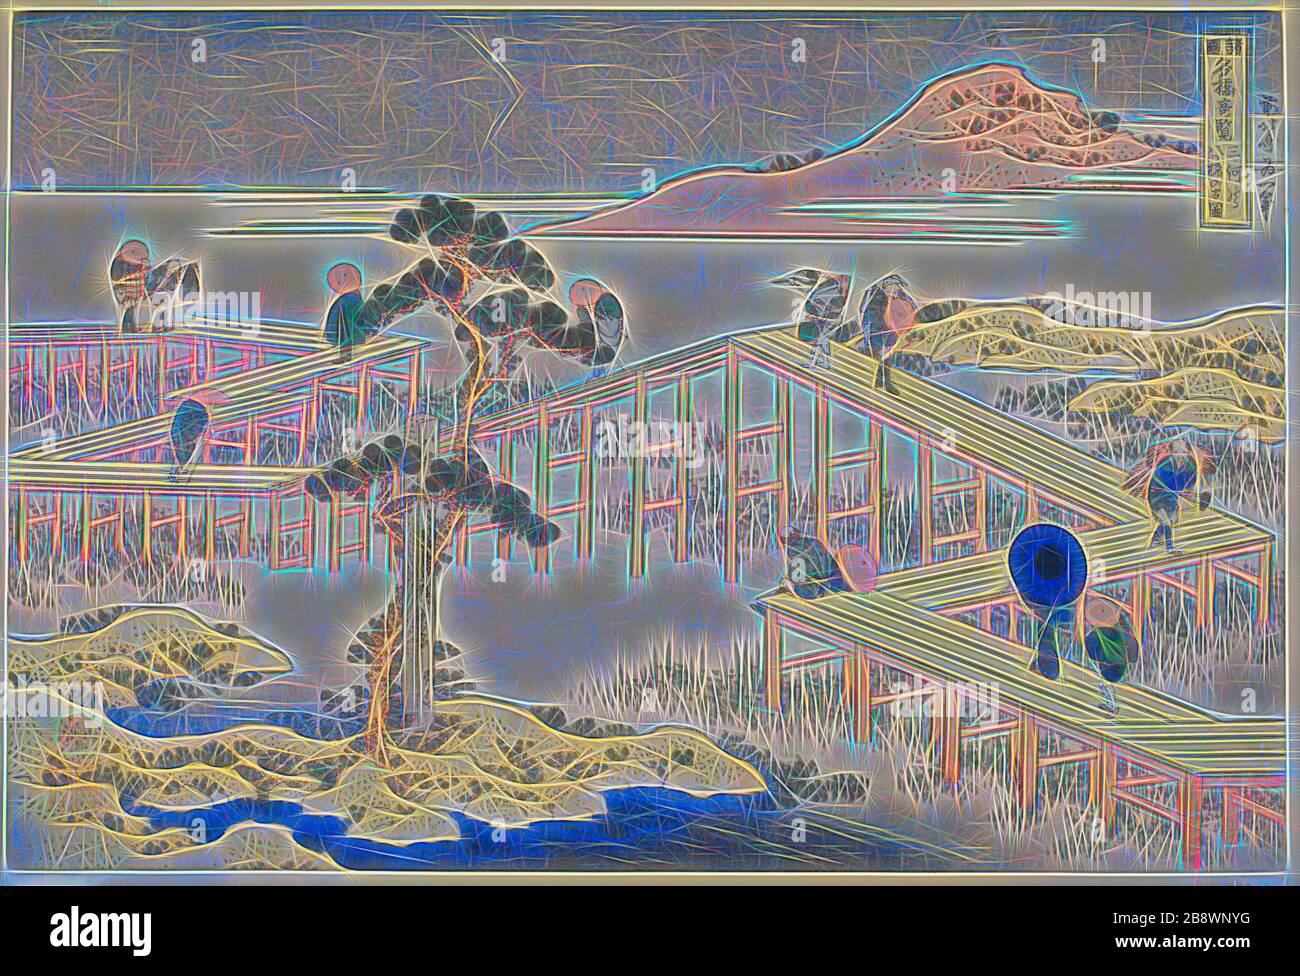 Veduta antica del ponte a otto piani nella provincia di Mikawa (Mikawa no Yatsuhashi no kozu), dalla serie viste inusuali di ponti famosi in varie Province (Shokoku meikyo kiran), c. 1833/34, Katsushika Hokusai ?? ??, Giapponese, 1760-1849, Giappone, stampa a blocchi di legno a colori, oban, Reimagined by Gibon, disegno di un caldo e allegro bagliore di luminosità e di radianza di raggi di luce. Arte classica reinventata con un tocco moderno. La fotografia ispirata al futurismo, che abbraccia l'energia dinamica della tecnologia moderna, del movimento, della velocità e rivoluziona la cultura. Foto Stock